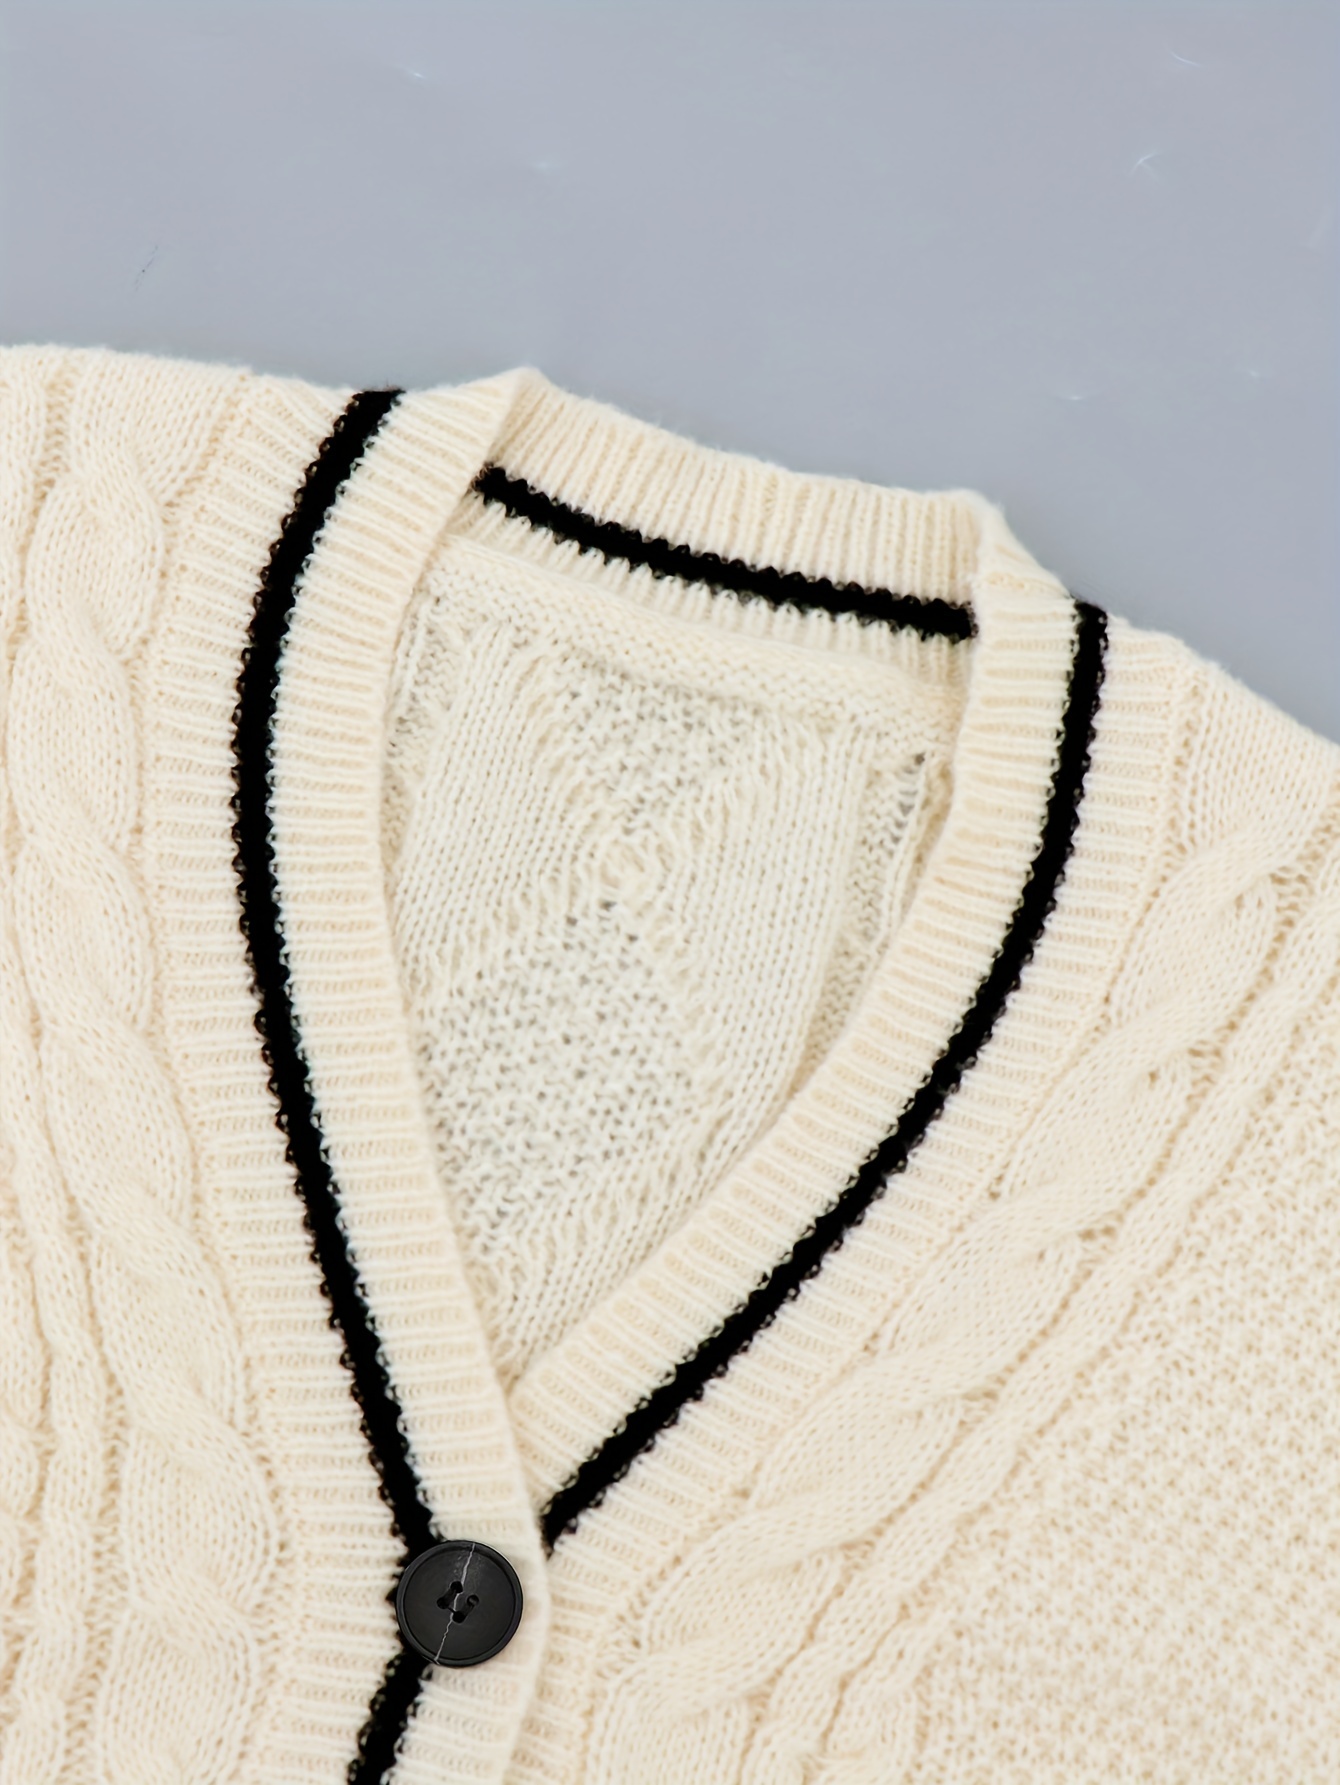 Louis Vuitton Preppy Stripe Accent Cardigan Cerise. Size Xs